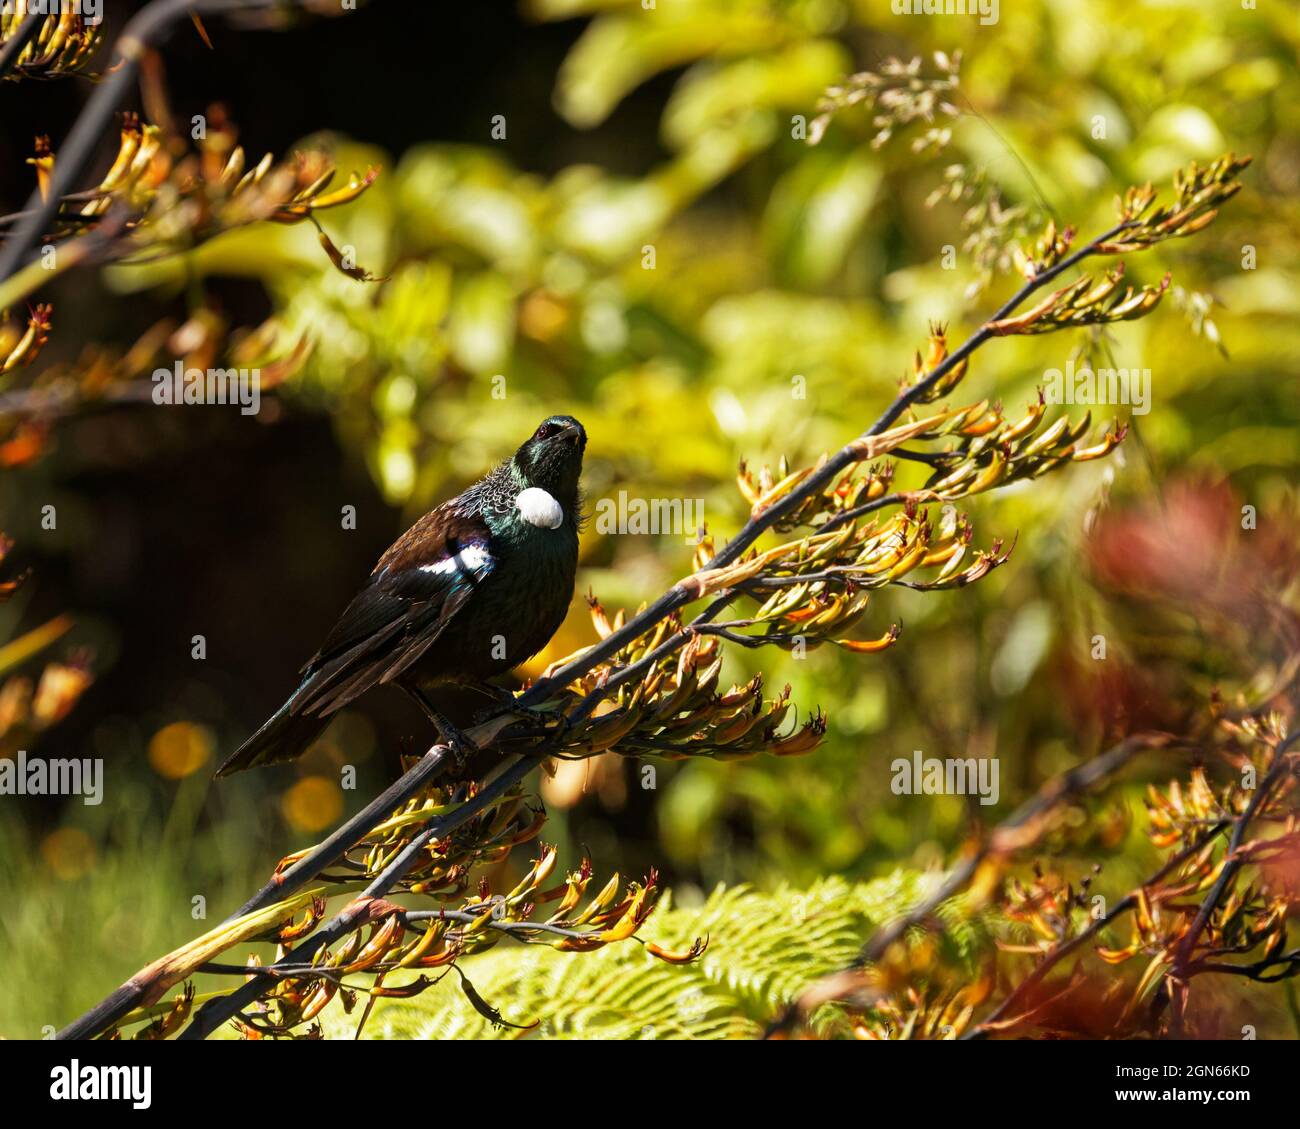 TUI, oiseau de passereau endémique de Nouvelle-Zélande, sur une plante de lin regardant vers la caméra Banque D'Images